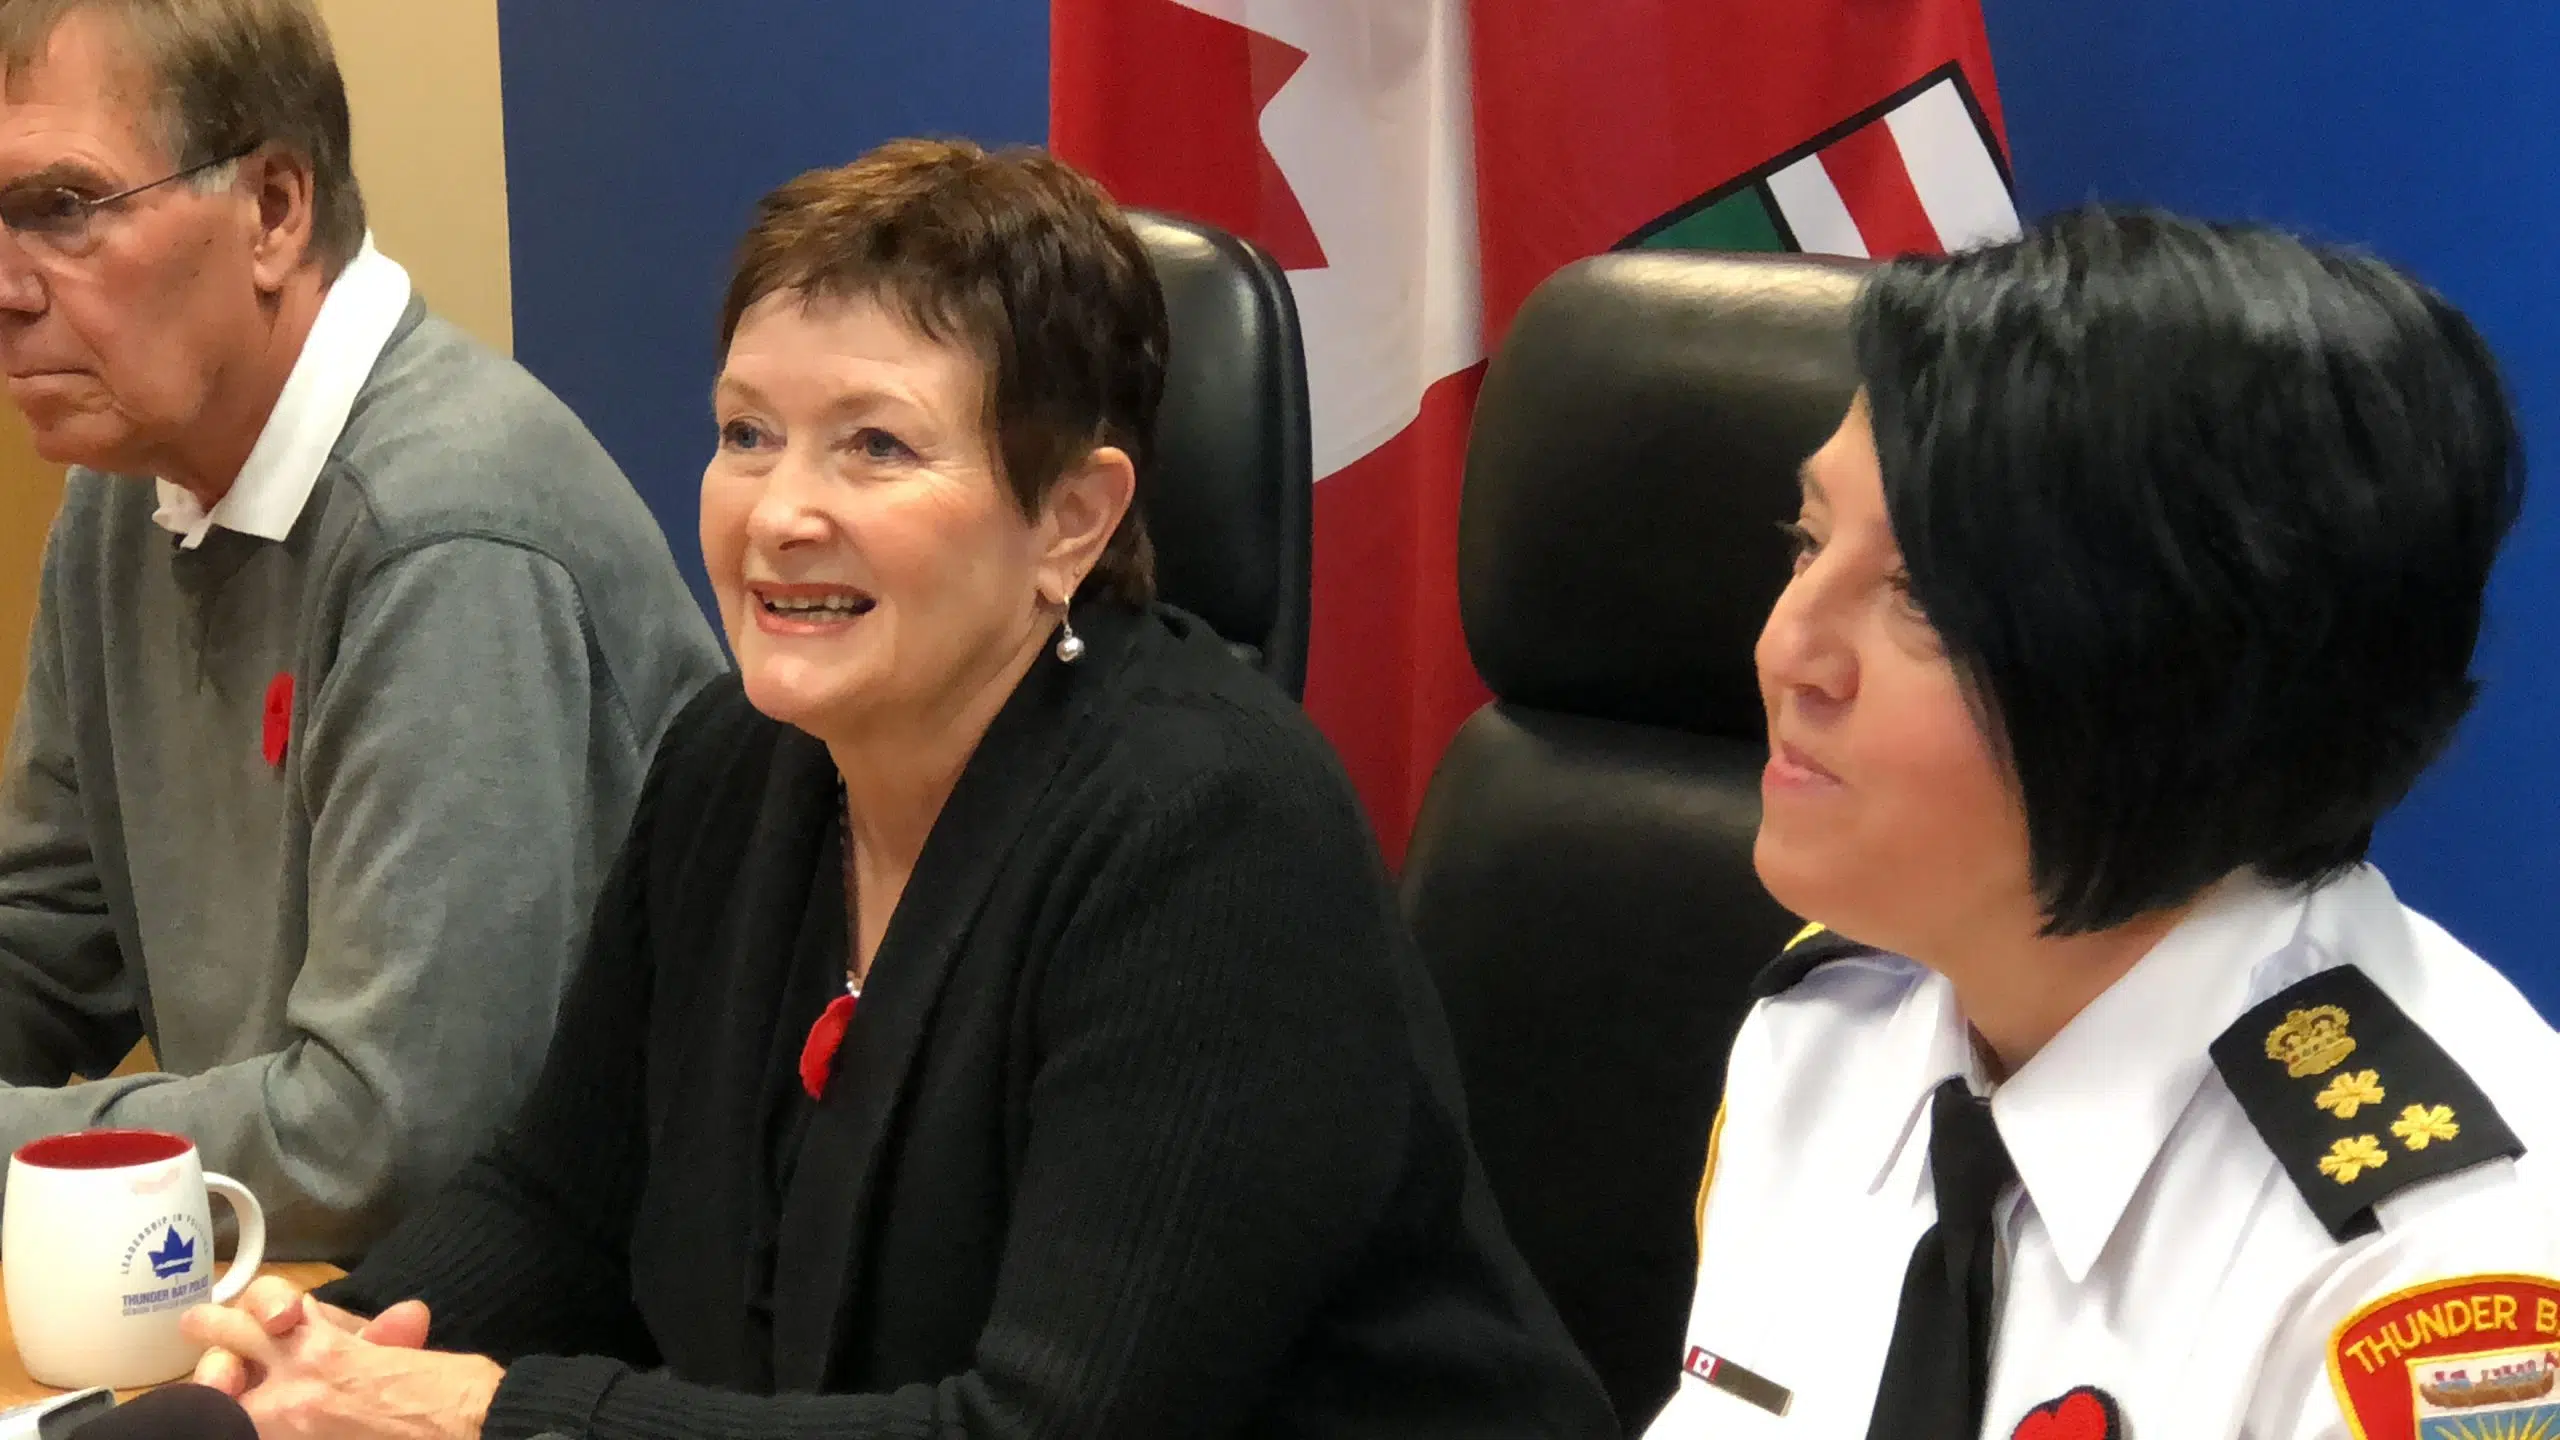 Sylvie Hauth Announced As Police Chief